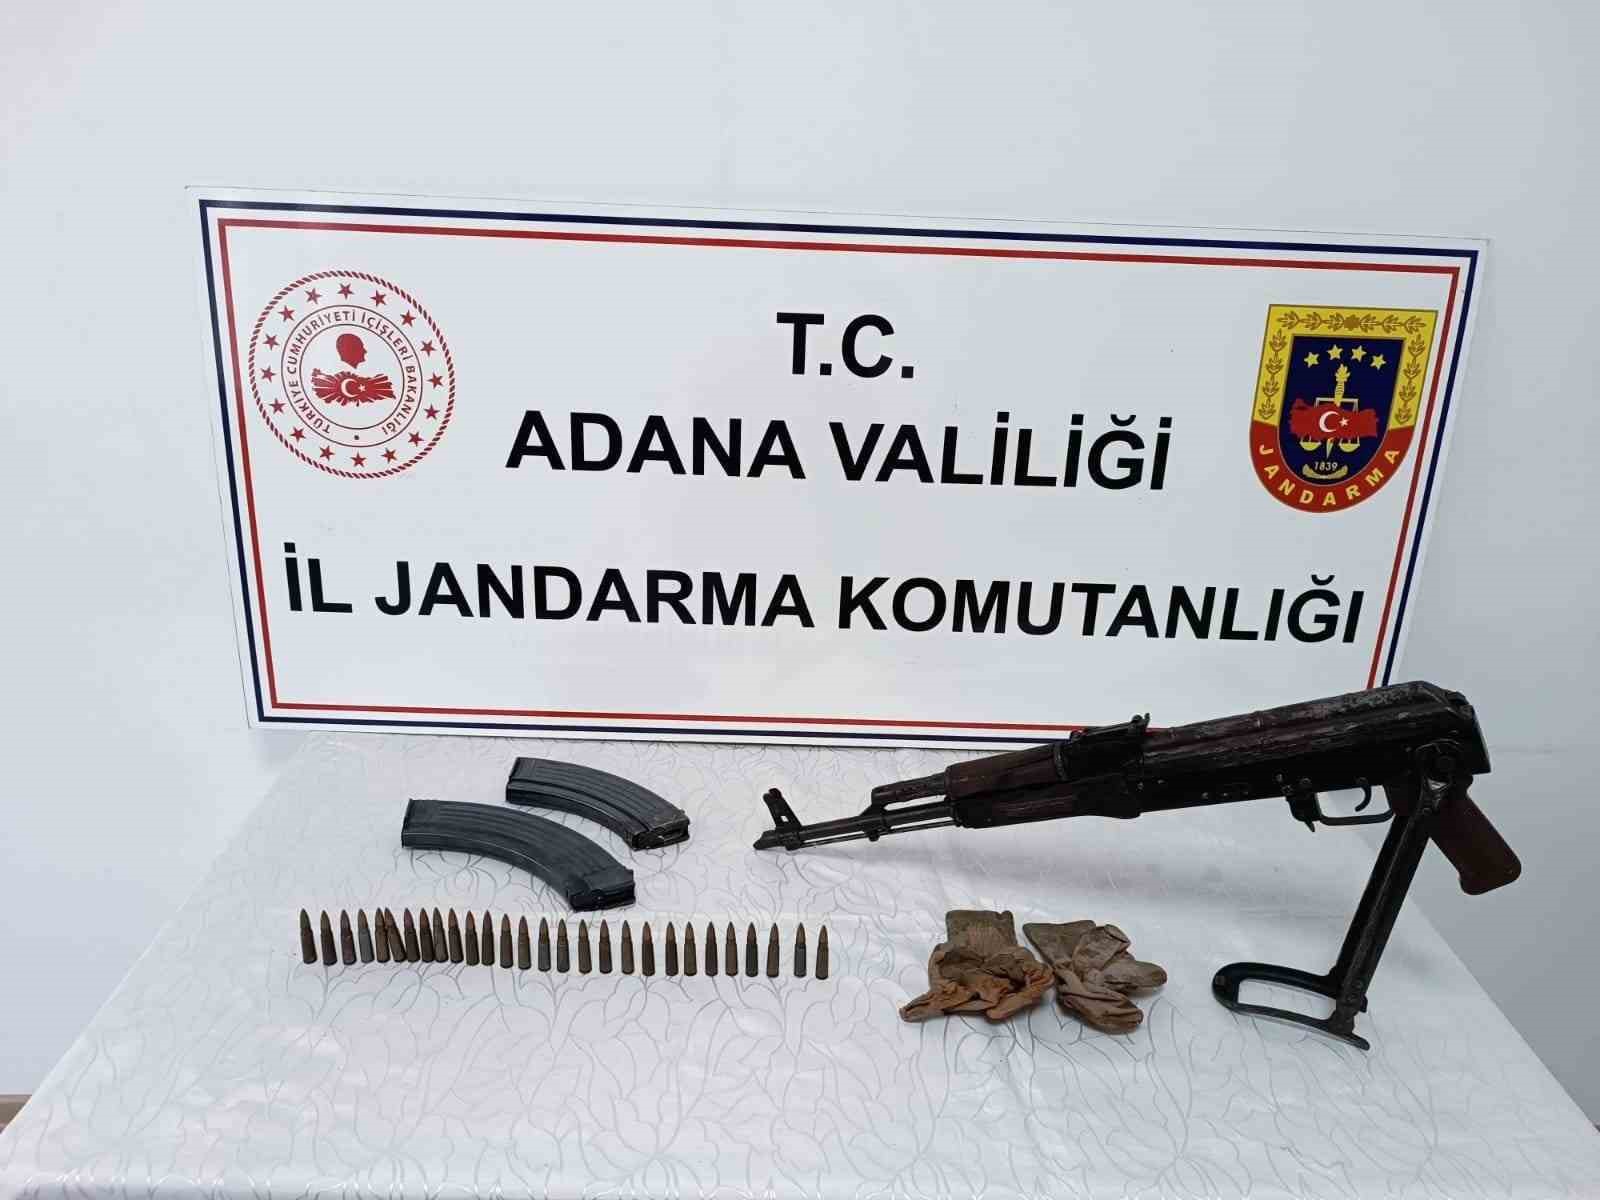 Adana'da bir uzun namlulu tüfek ele geçirilirken 2 kişi de yakalandı İhlas Haber Ajansı